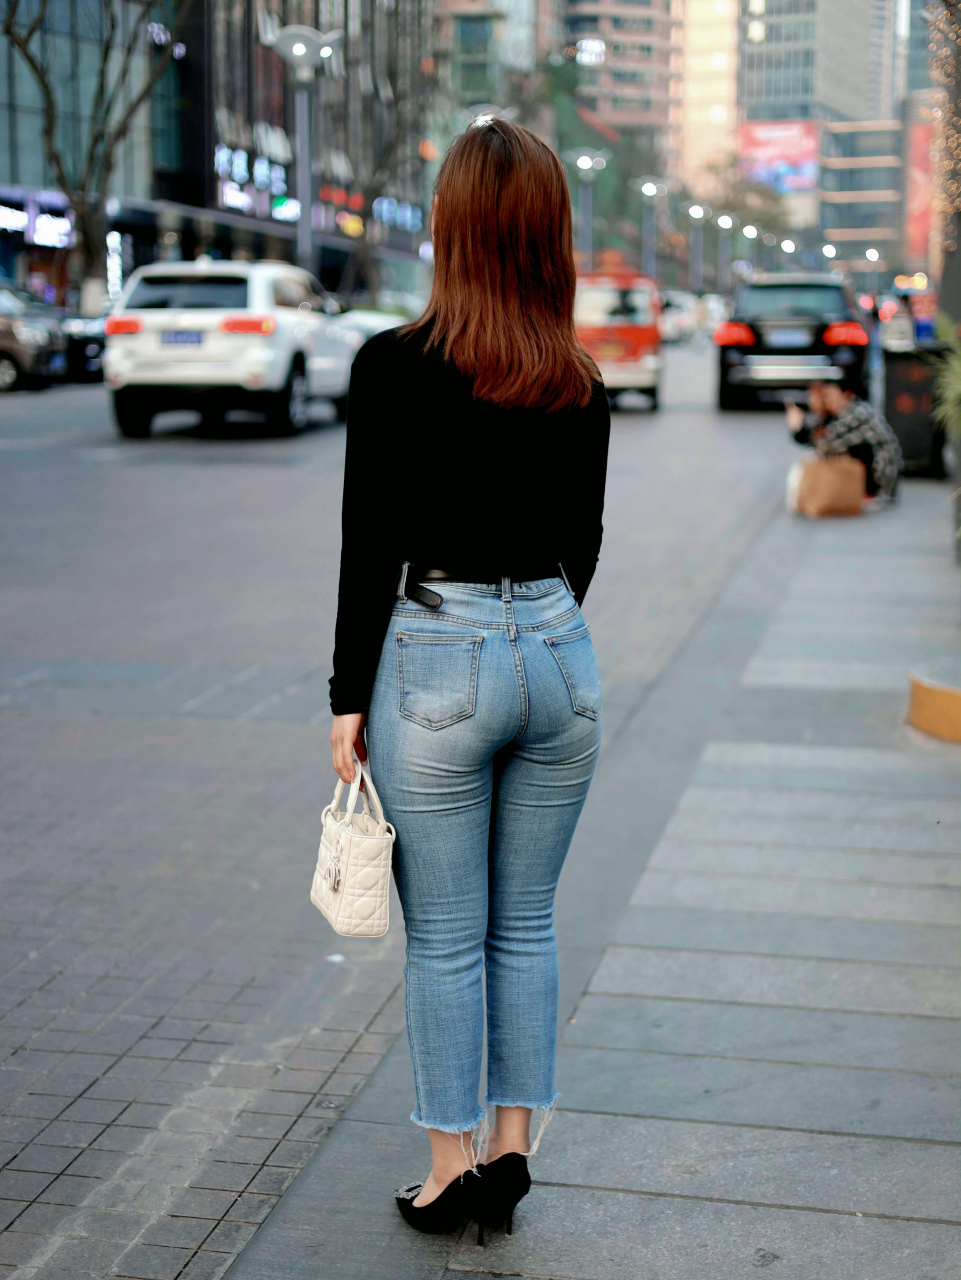 牛仔裤女背影街拍图片